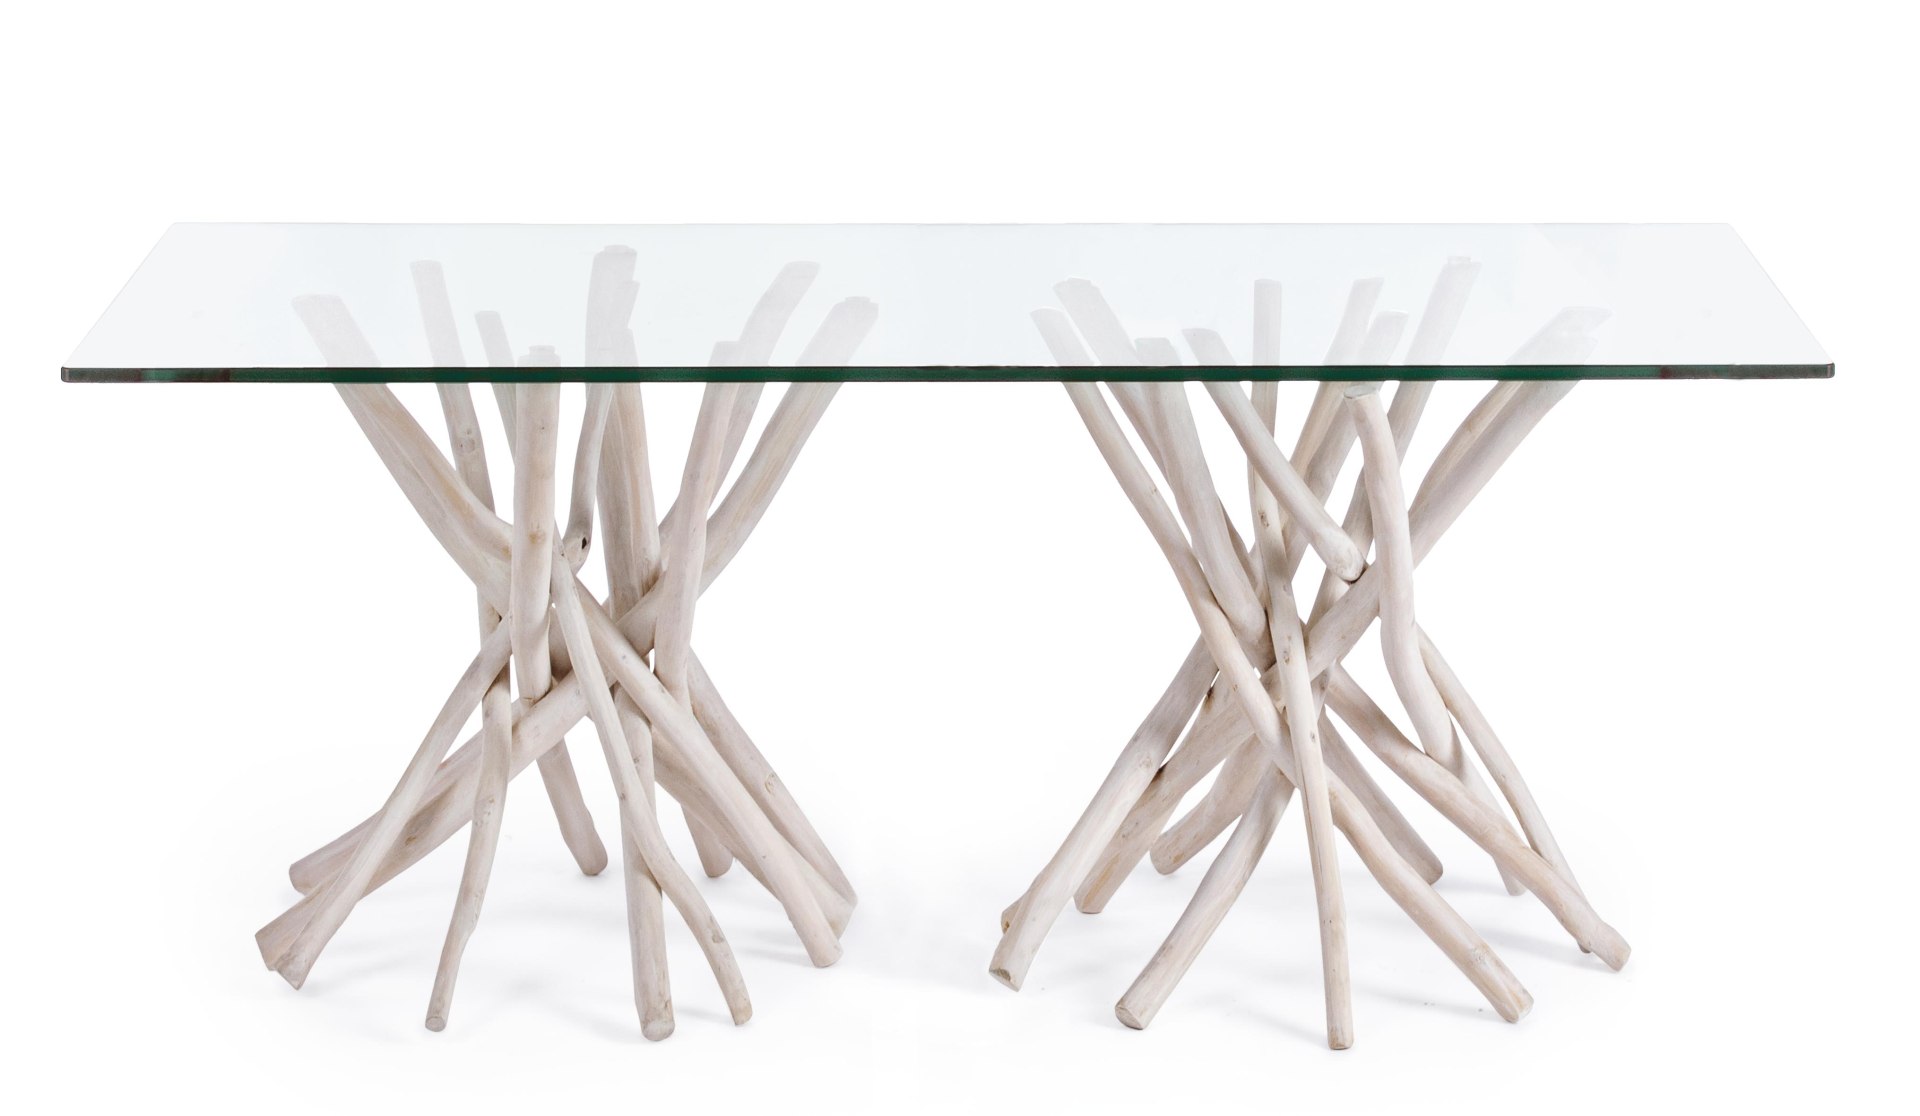 Der Esstisch Sahelt überzeugt mit seinem moderndem Design. Gefertigt wurde er aus einer Glasplatte. Das Gestell des Tisches ist aus Teakholz Zweigen und ist in einer weißen Farbe. Der Tisch besitzt eine Breite von 200 cm.